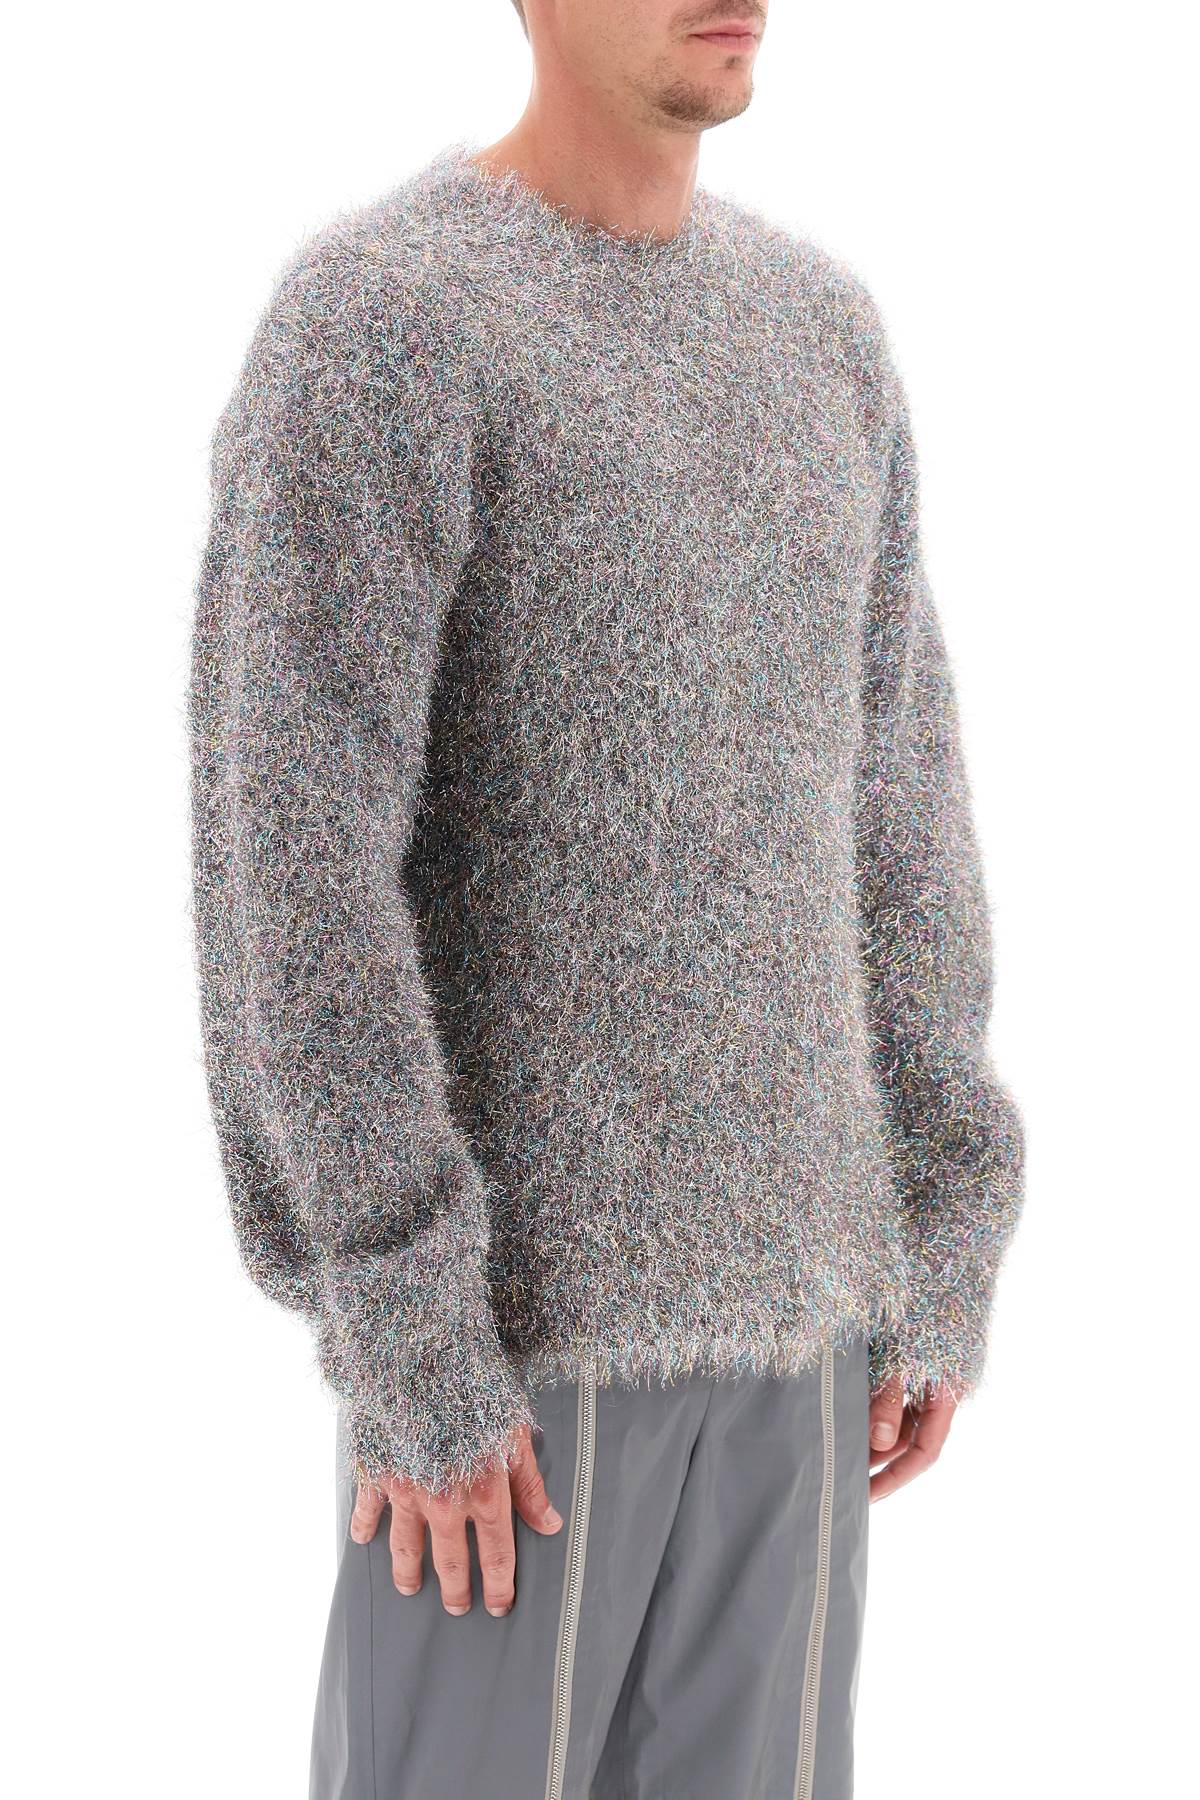 Jil Sander Lurex And Mohair Sweater Men